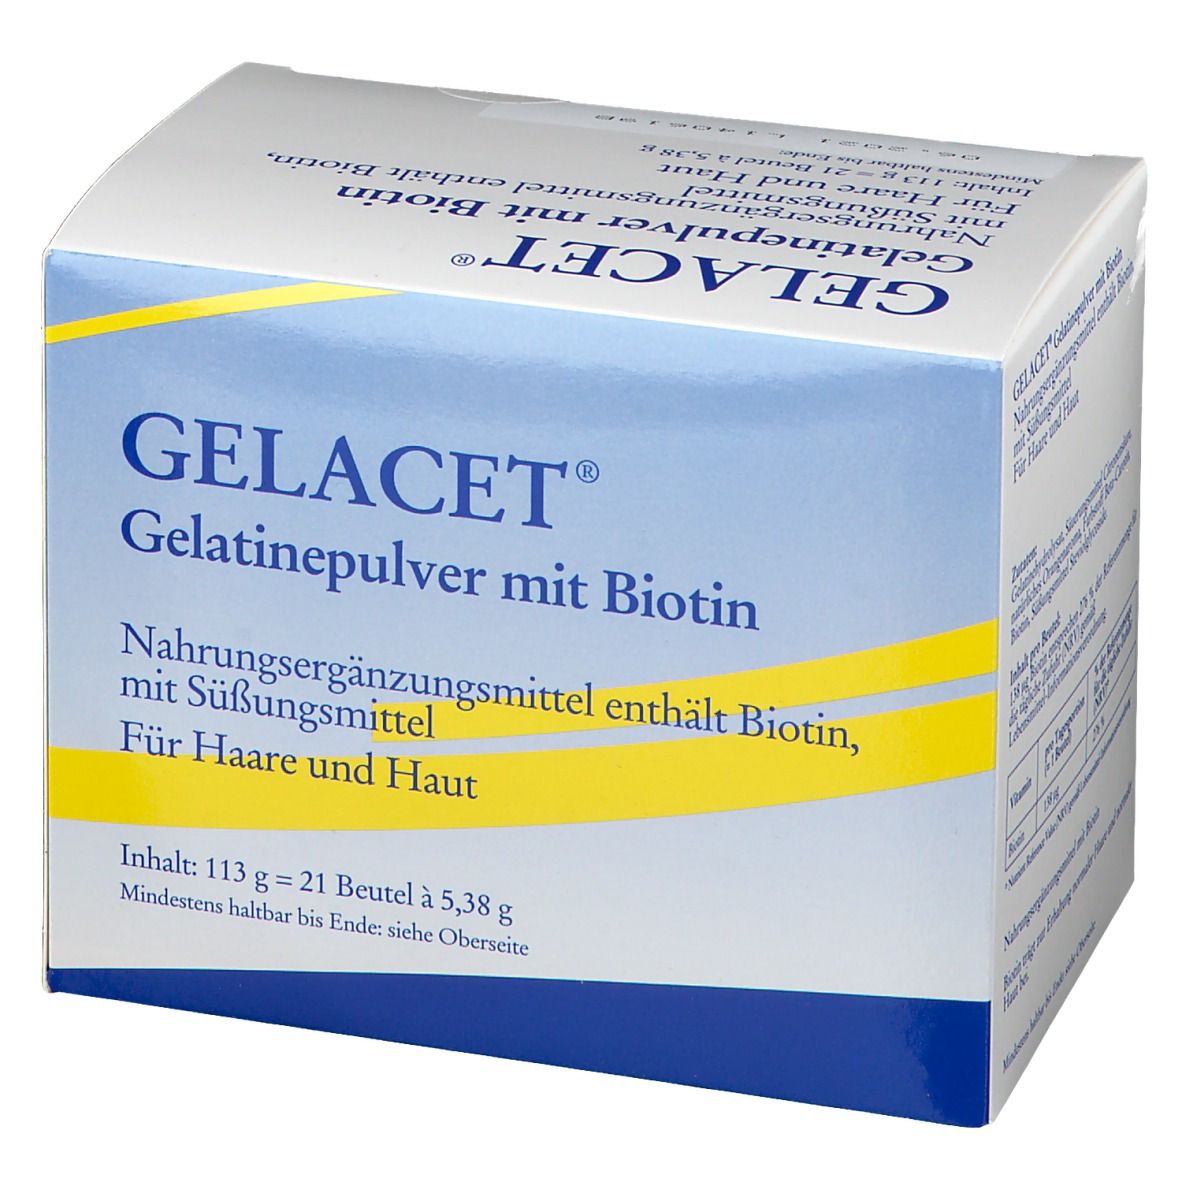 Gelacet® Gelatinepulver mit Biotin